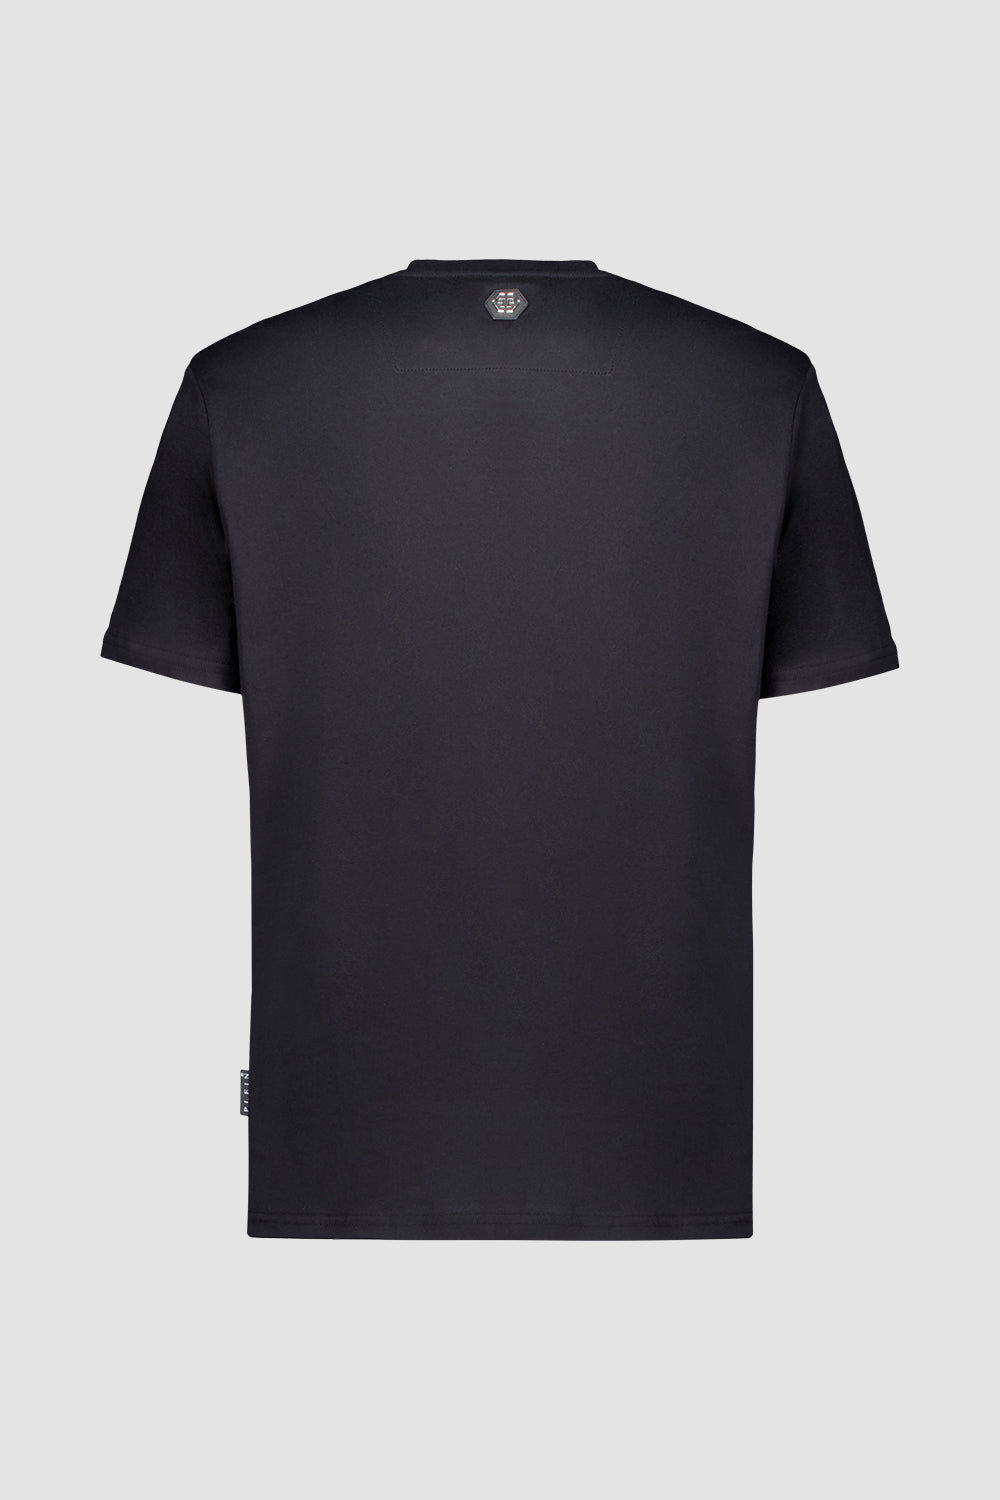 Philipp Plein Black Round Neck SS Dog T-Shirt